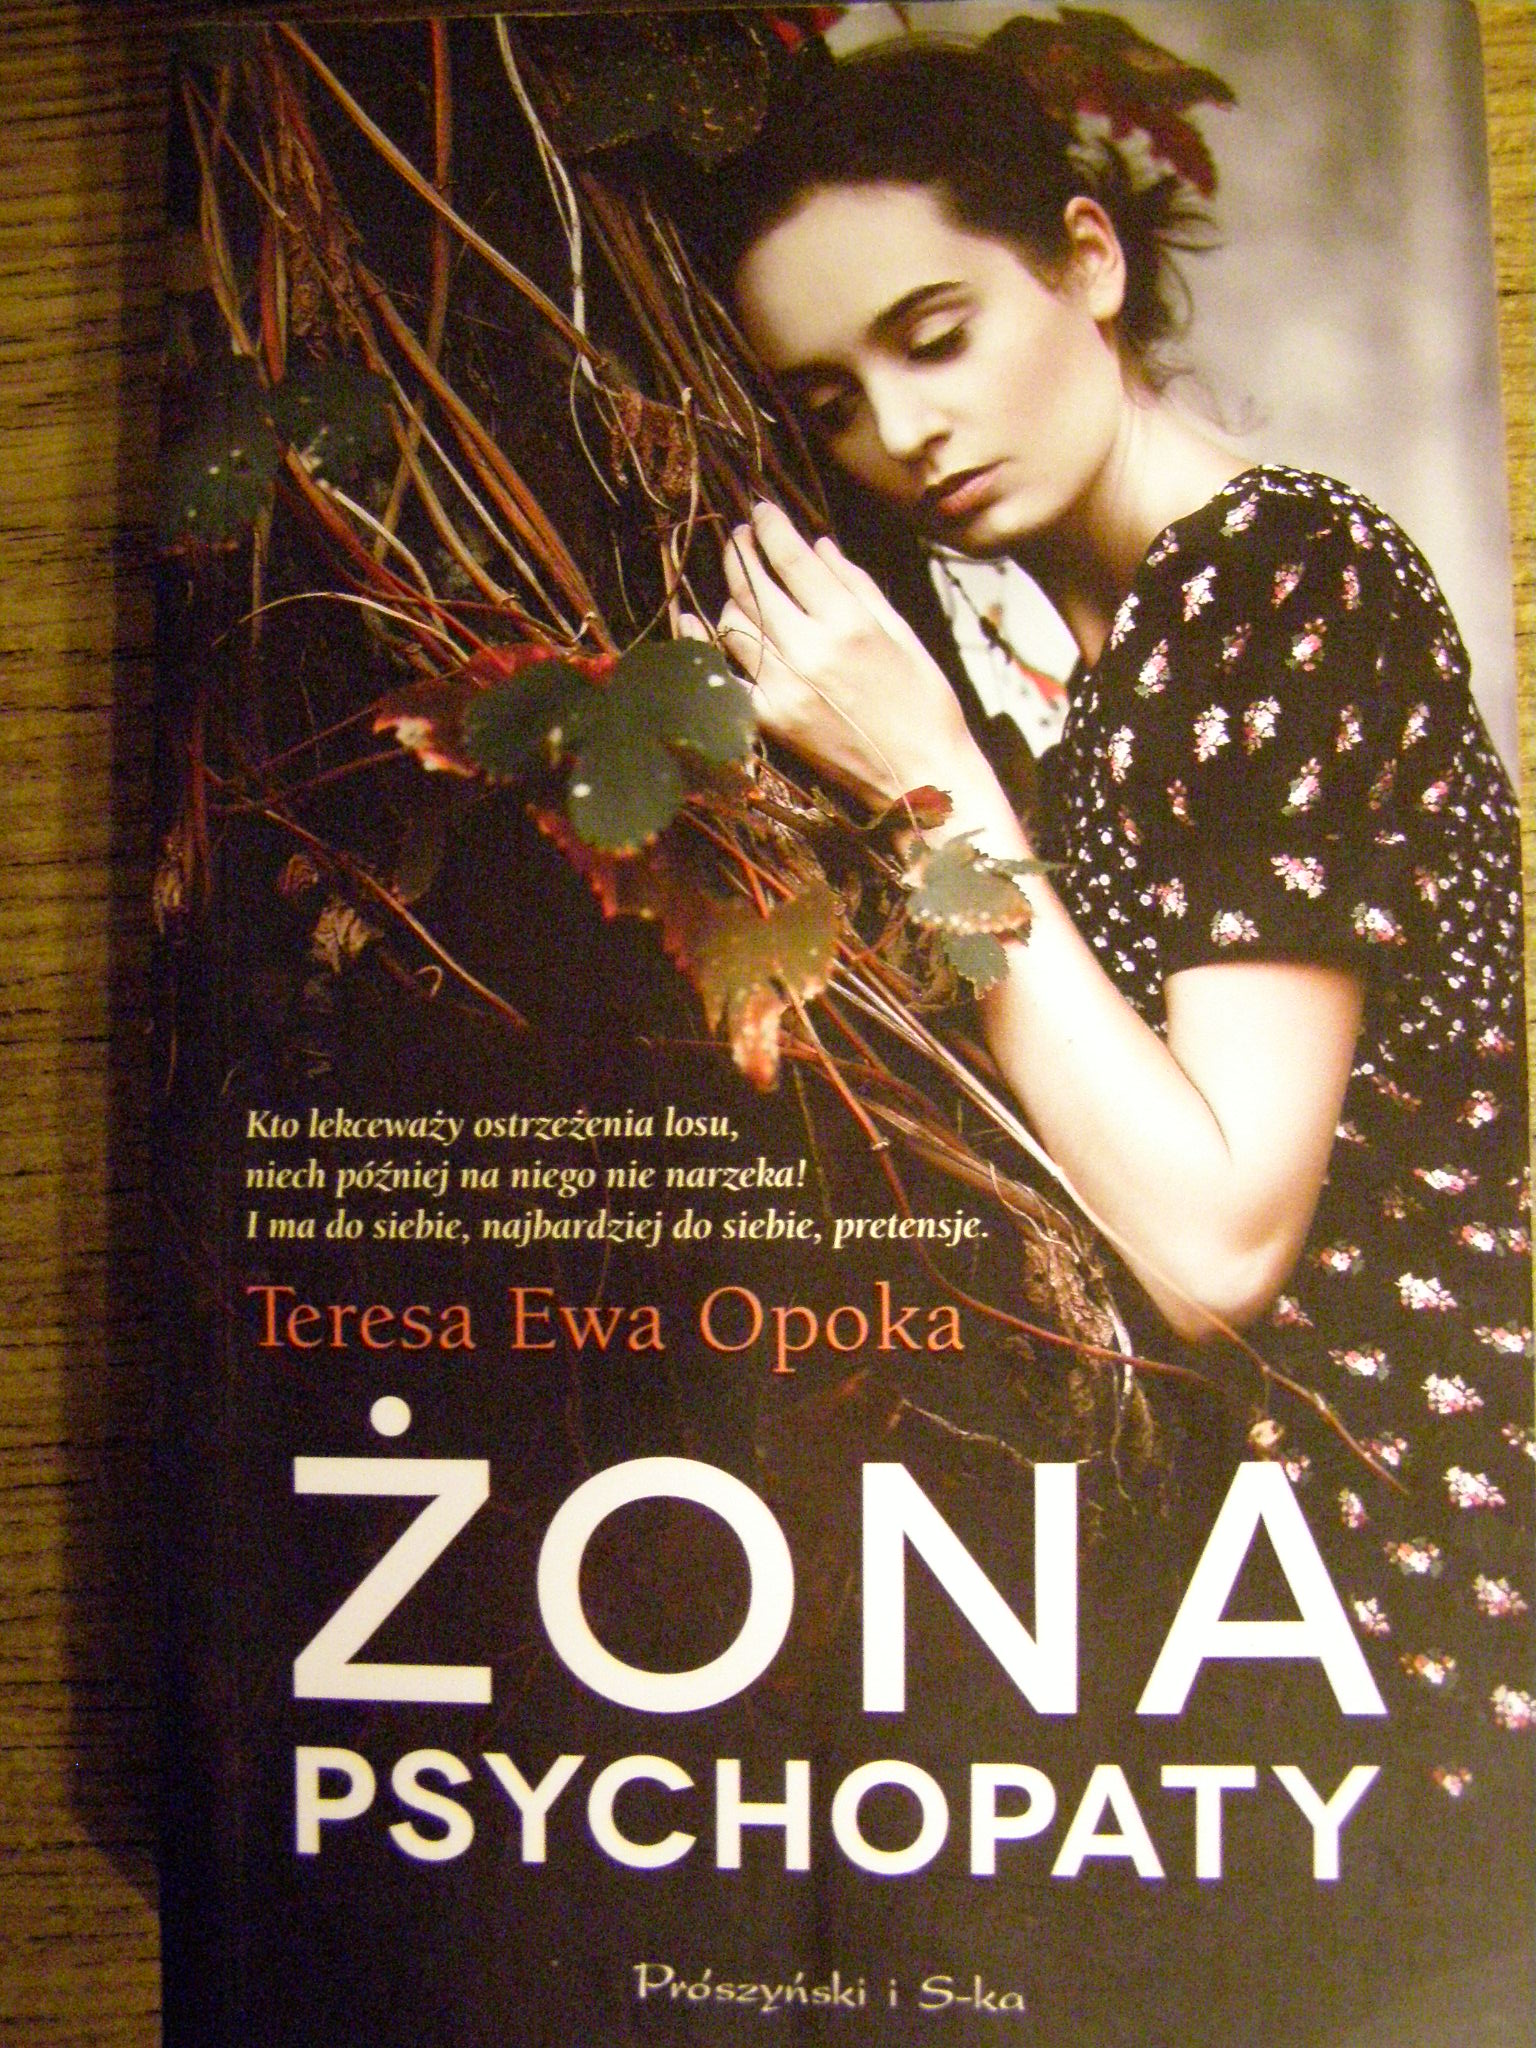 Teresa Ewa Opoka "Żona psychopaty" - książka - recenzja